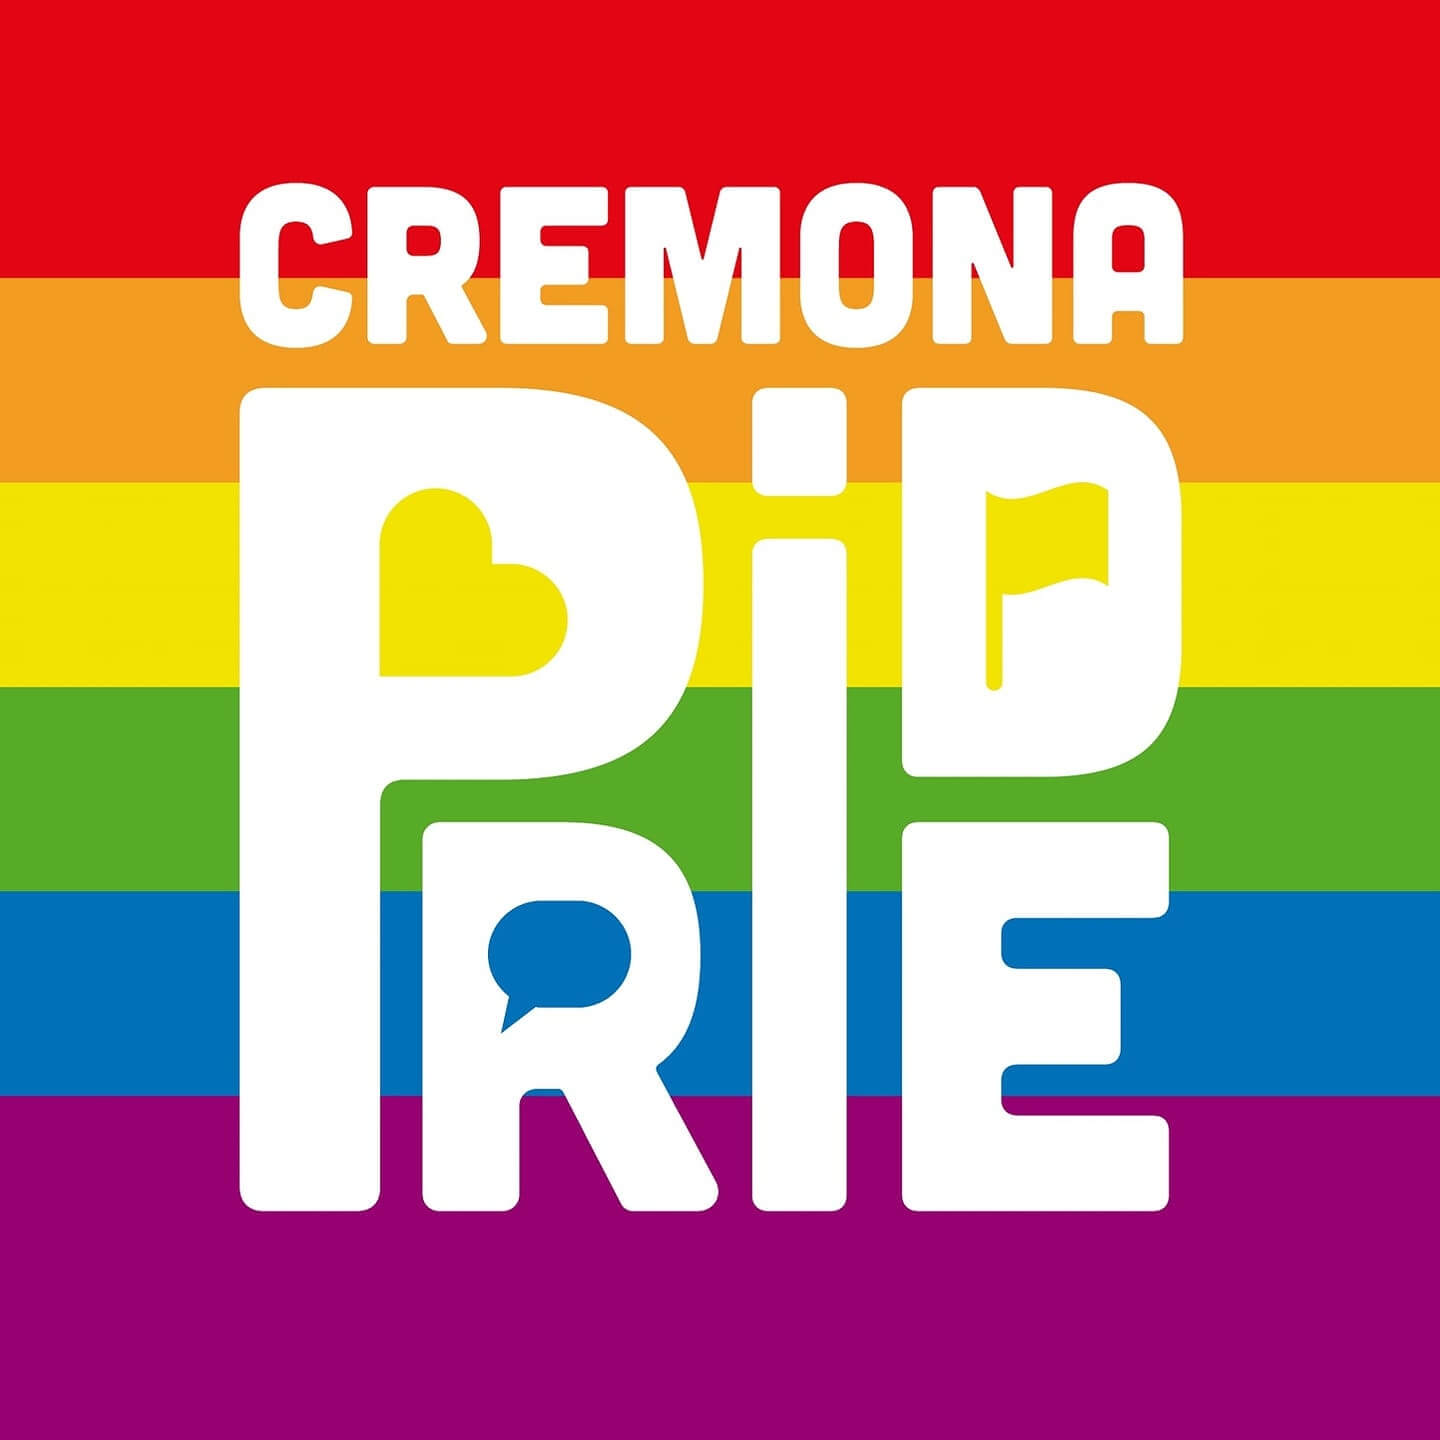 Cremona Pride 2022 il 4 giugno, sarà la prima volta in città - Cremona Pride 2022 - Gay.it